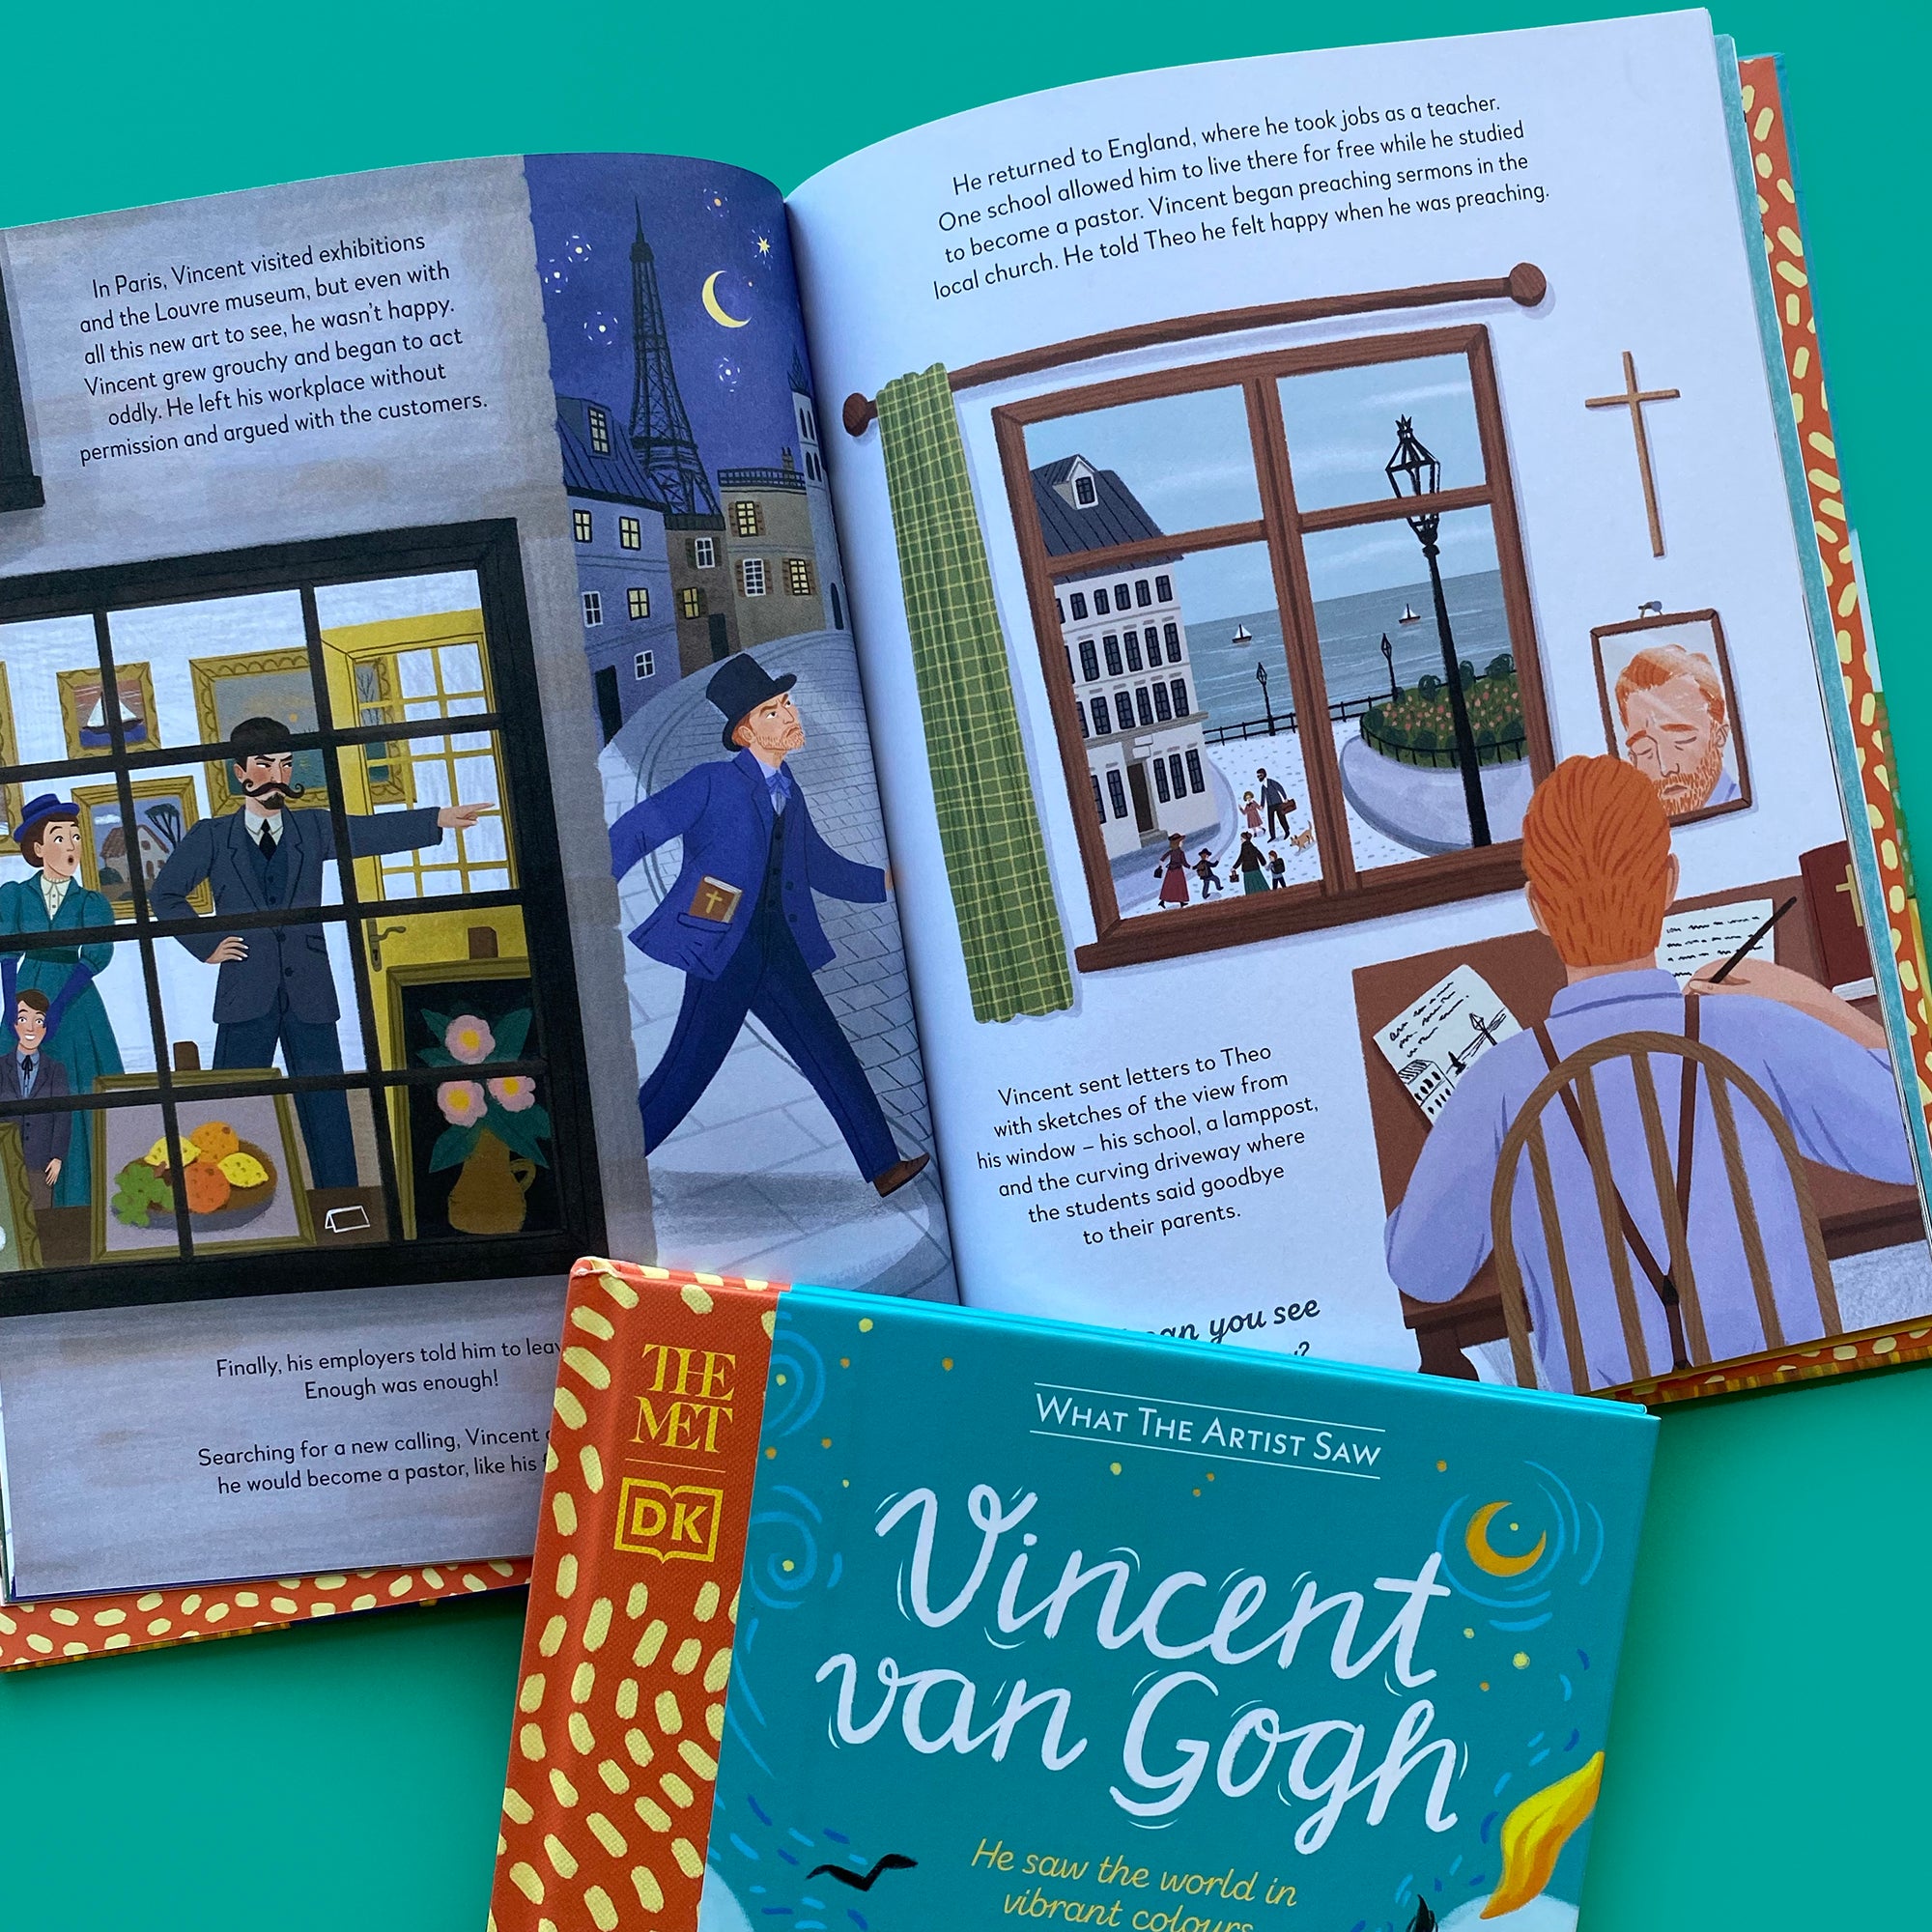 The MET - Vincent Van Gogh